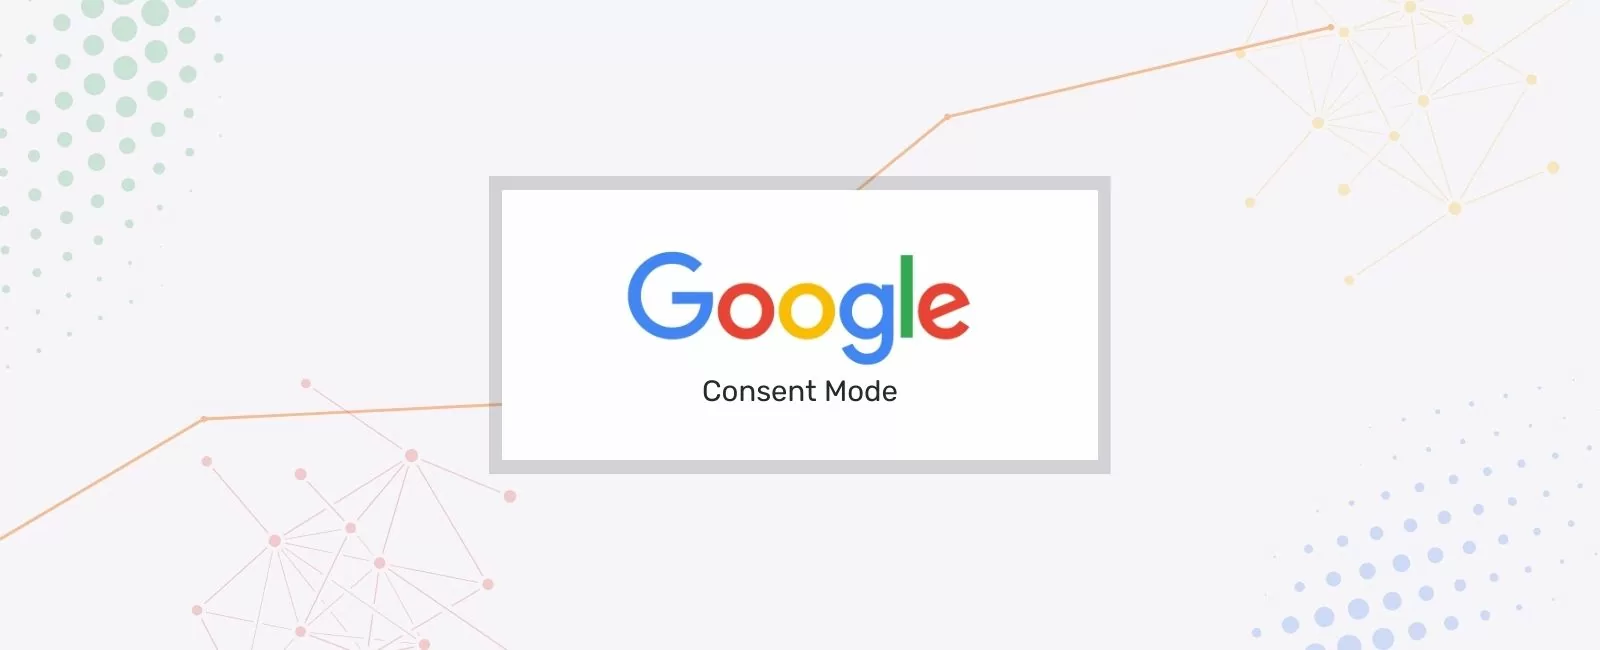 Grafik mit Google-Logo in der Mitte